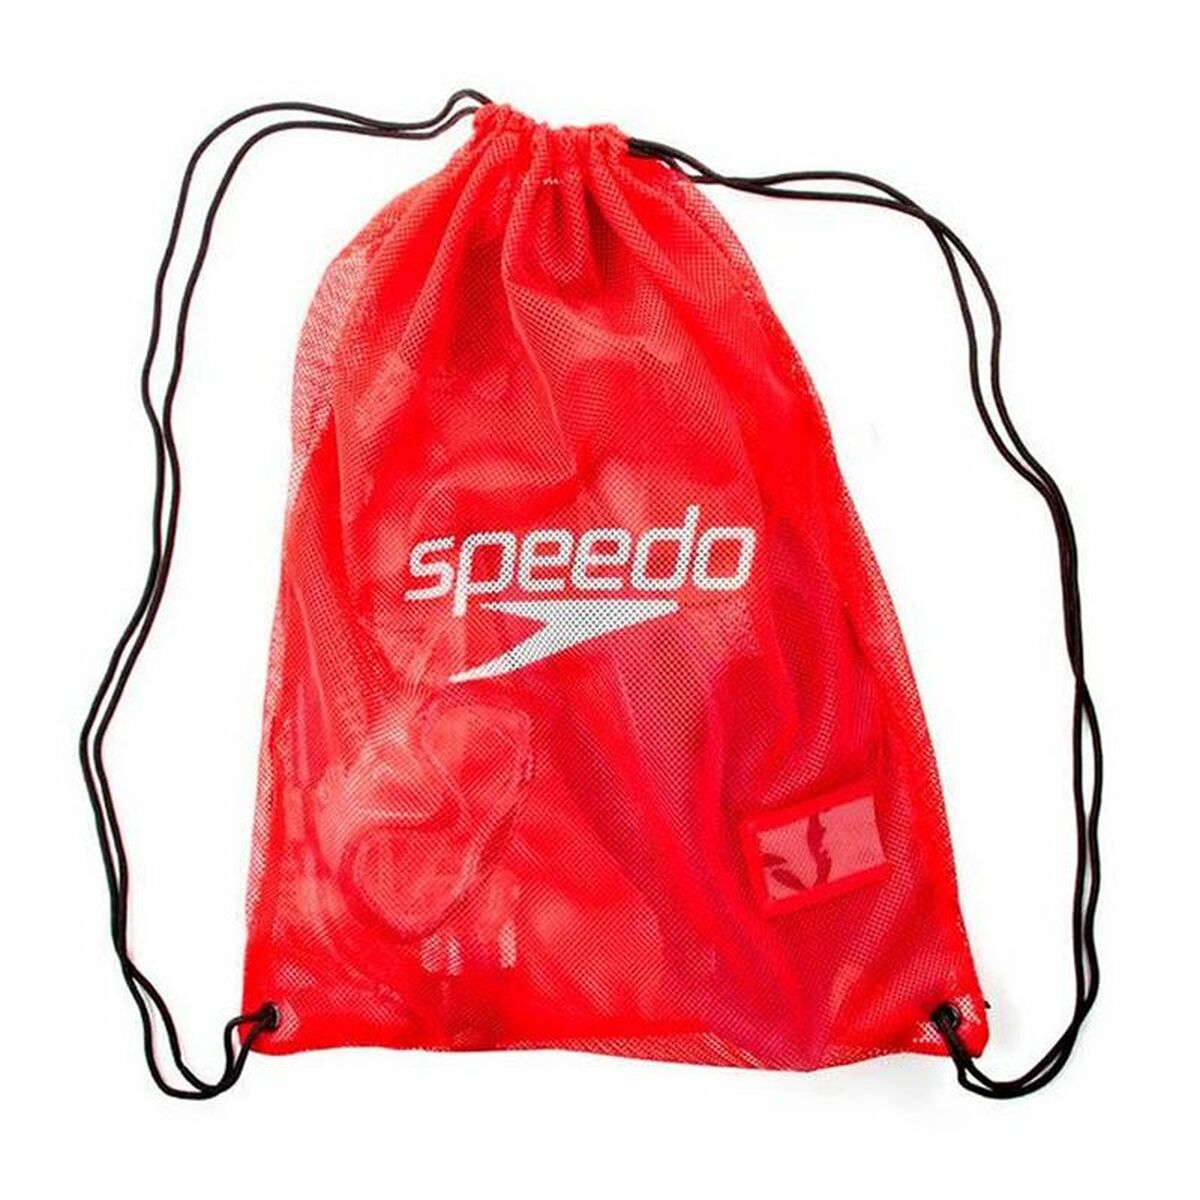 Sports bag Speedo Red 35 L Leggings Equipment